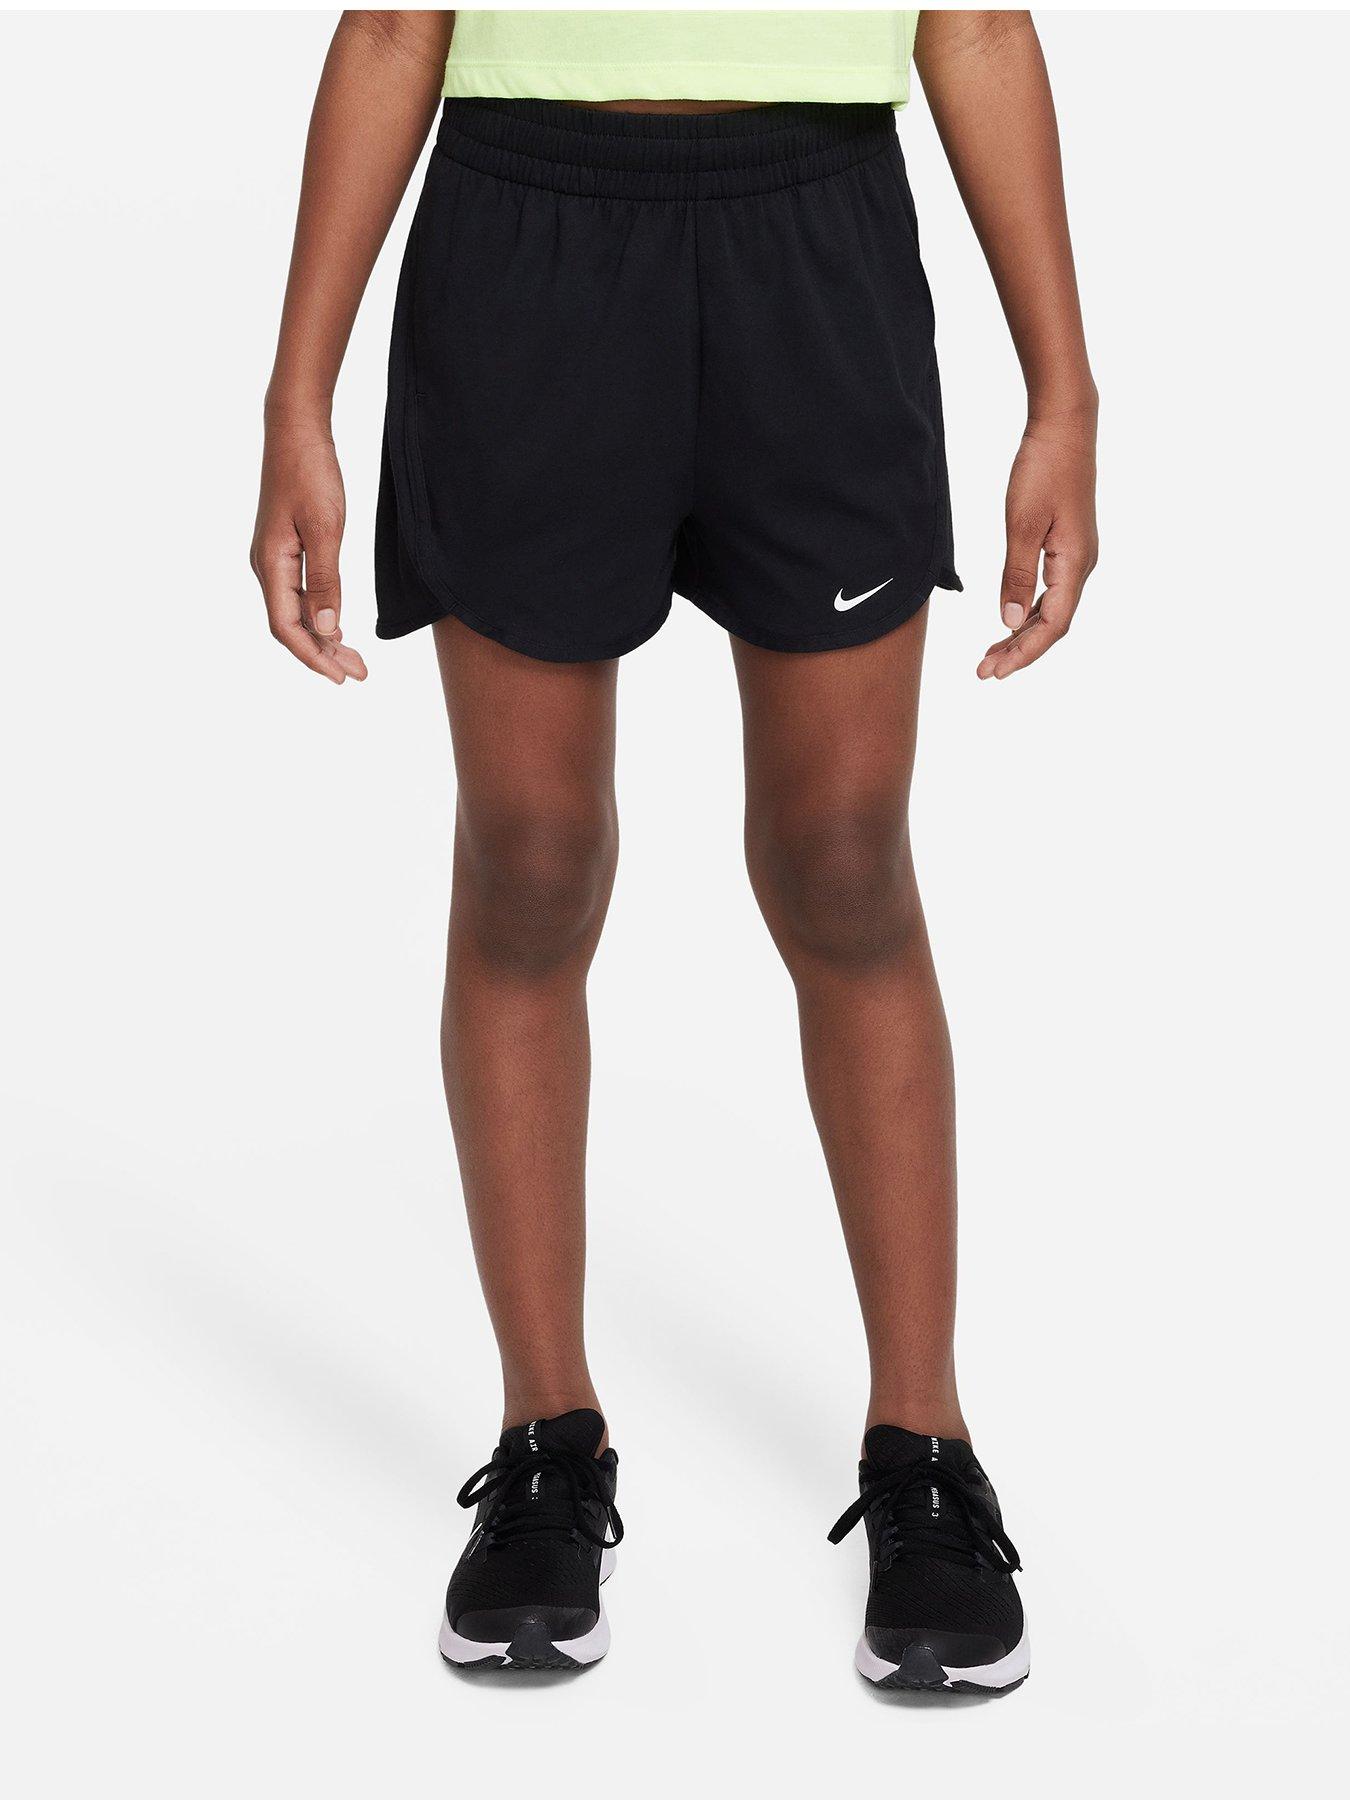 Girls Nike Pro Shorts, Comfortable & Stylish